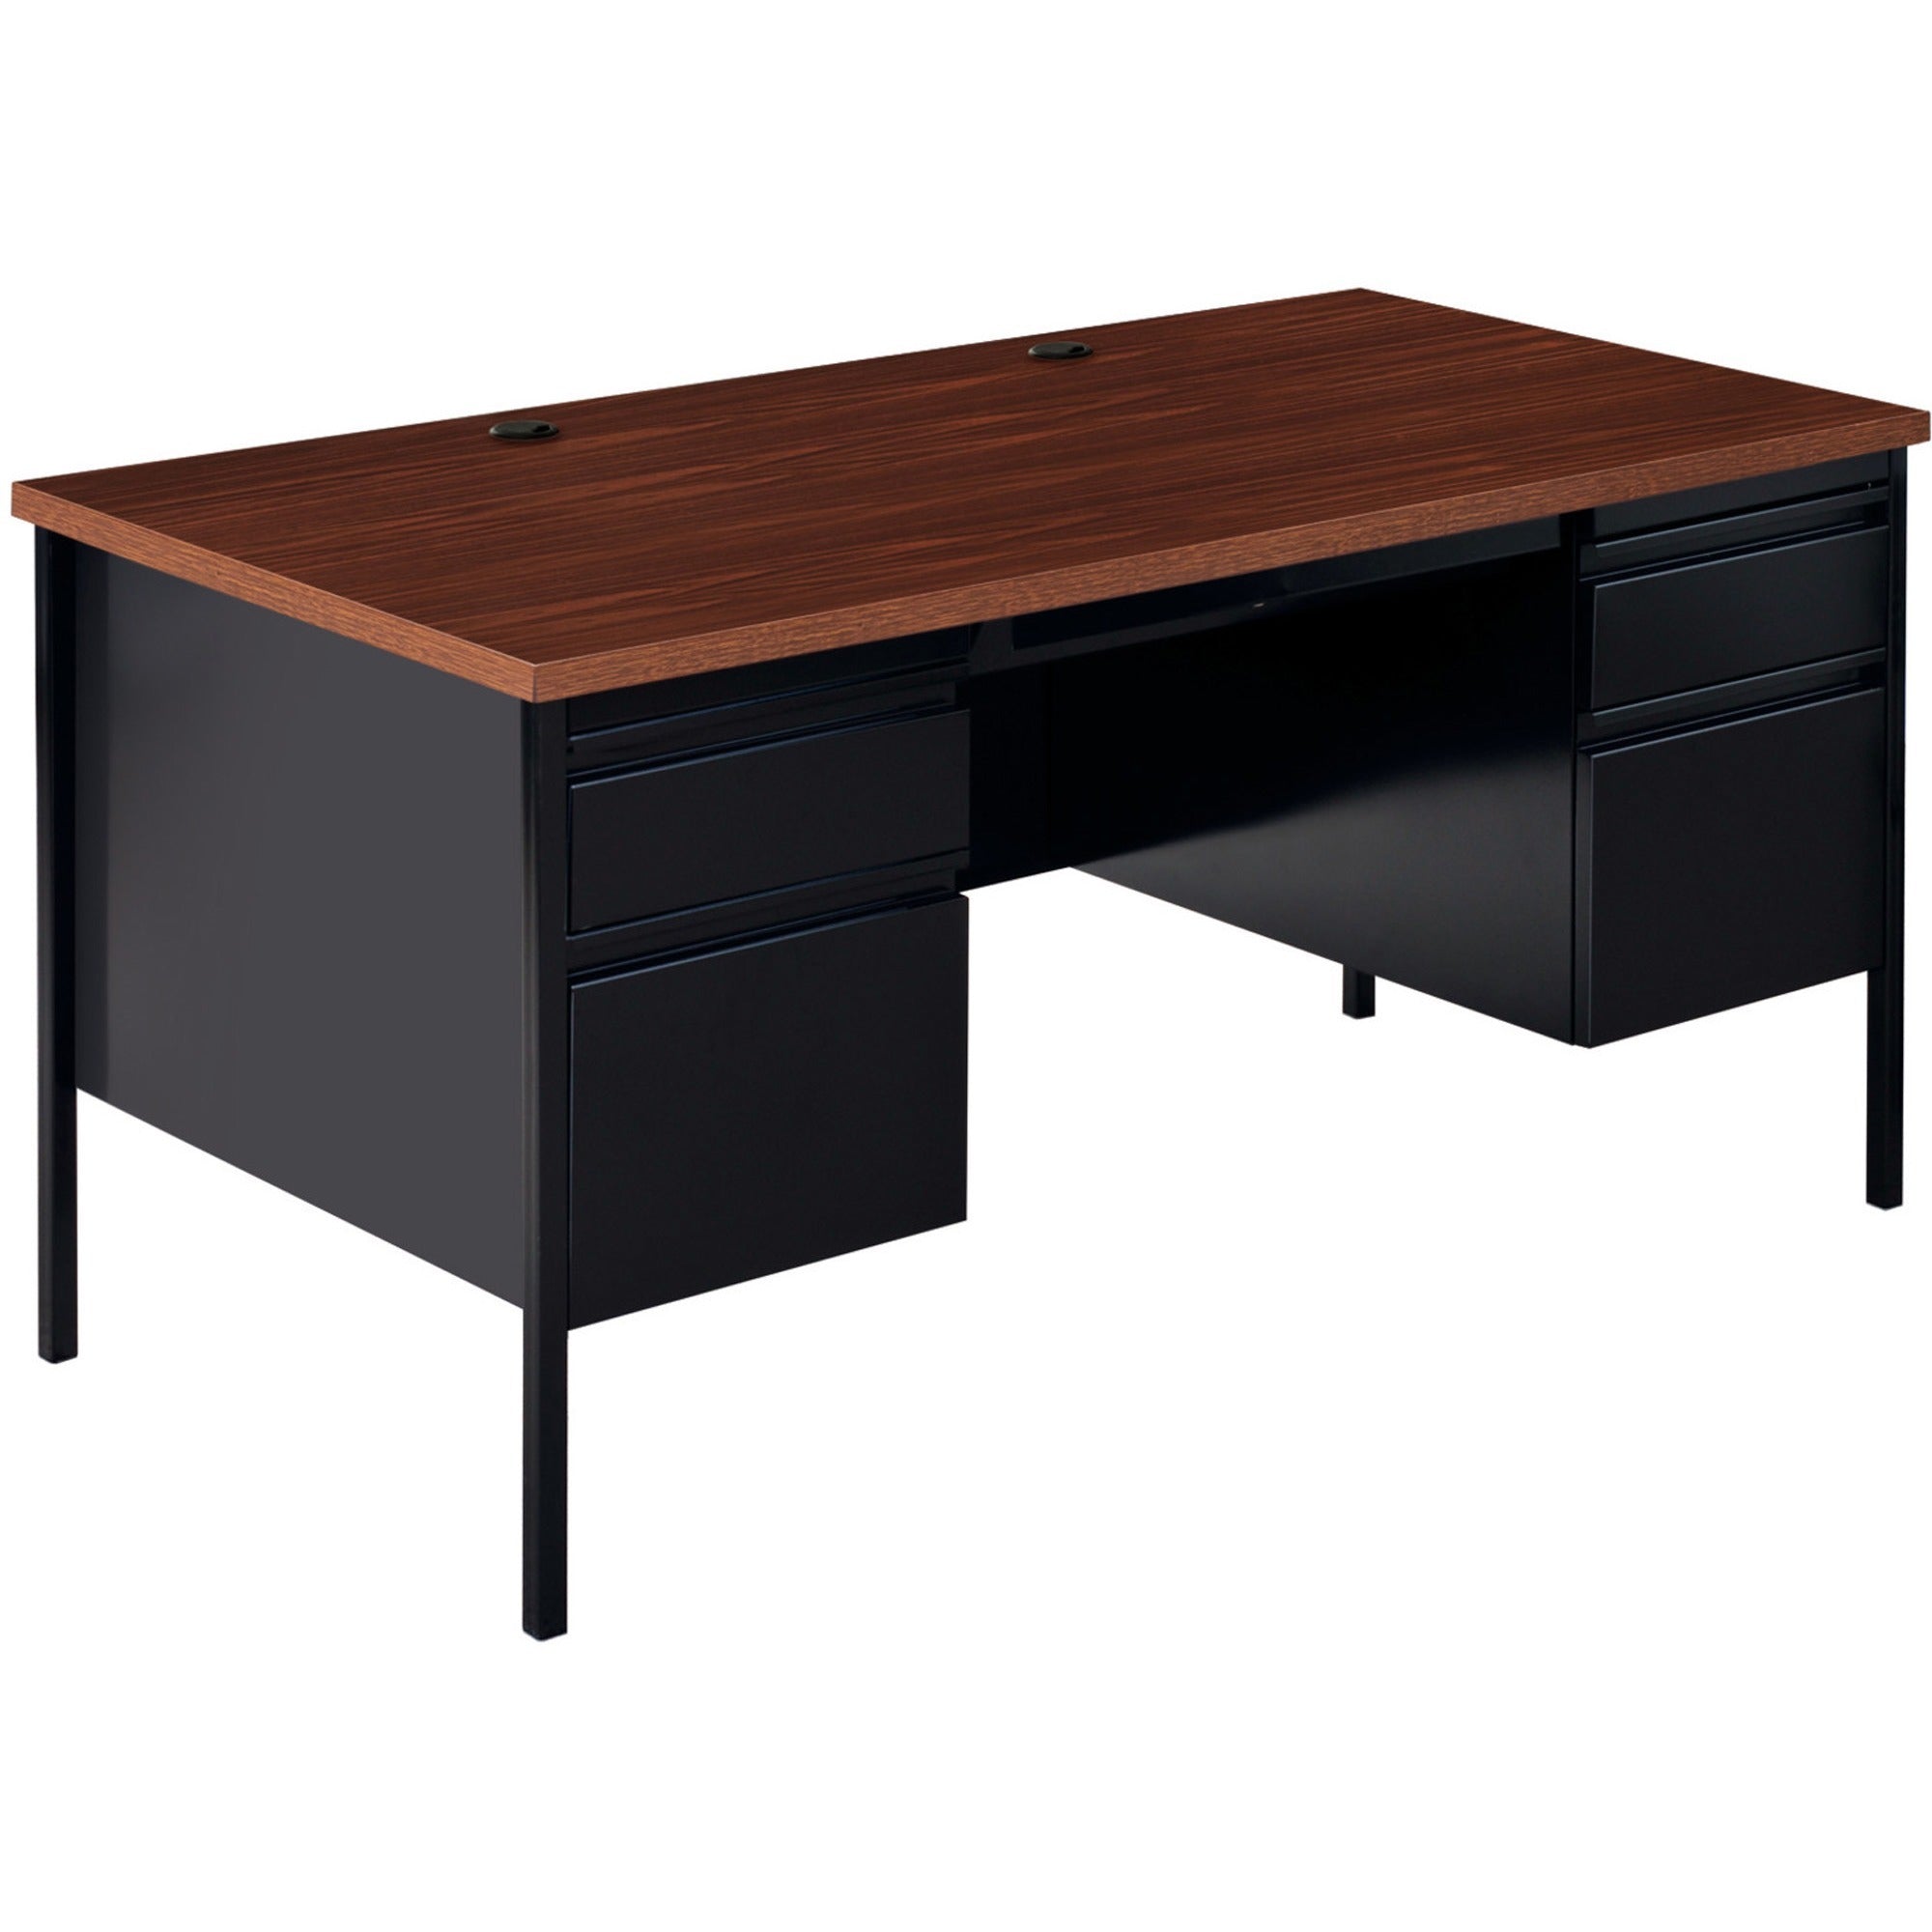 Double-Pedestal Desk- Black Walnut, Laminated, Walnut - Steel